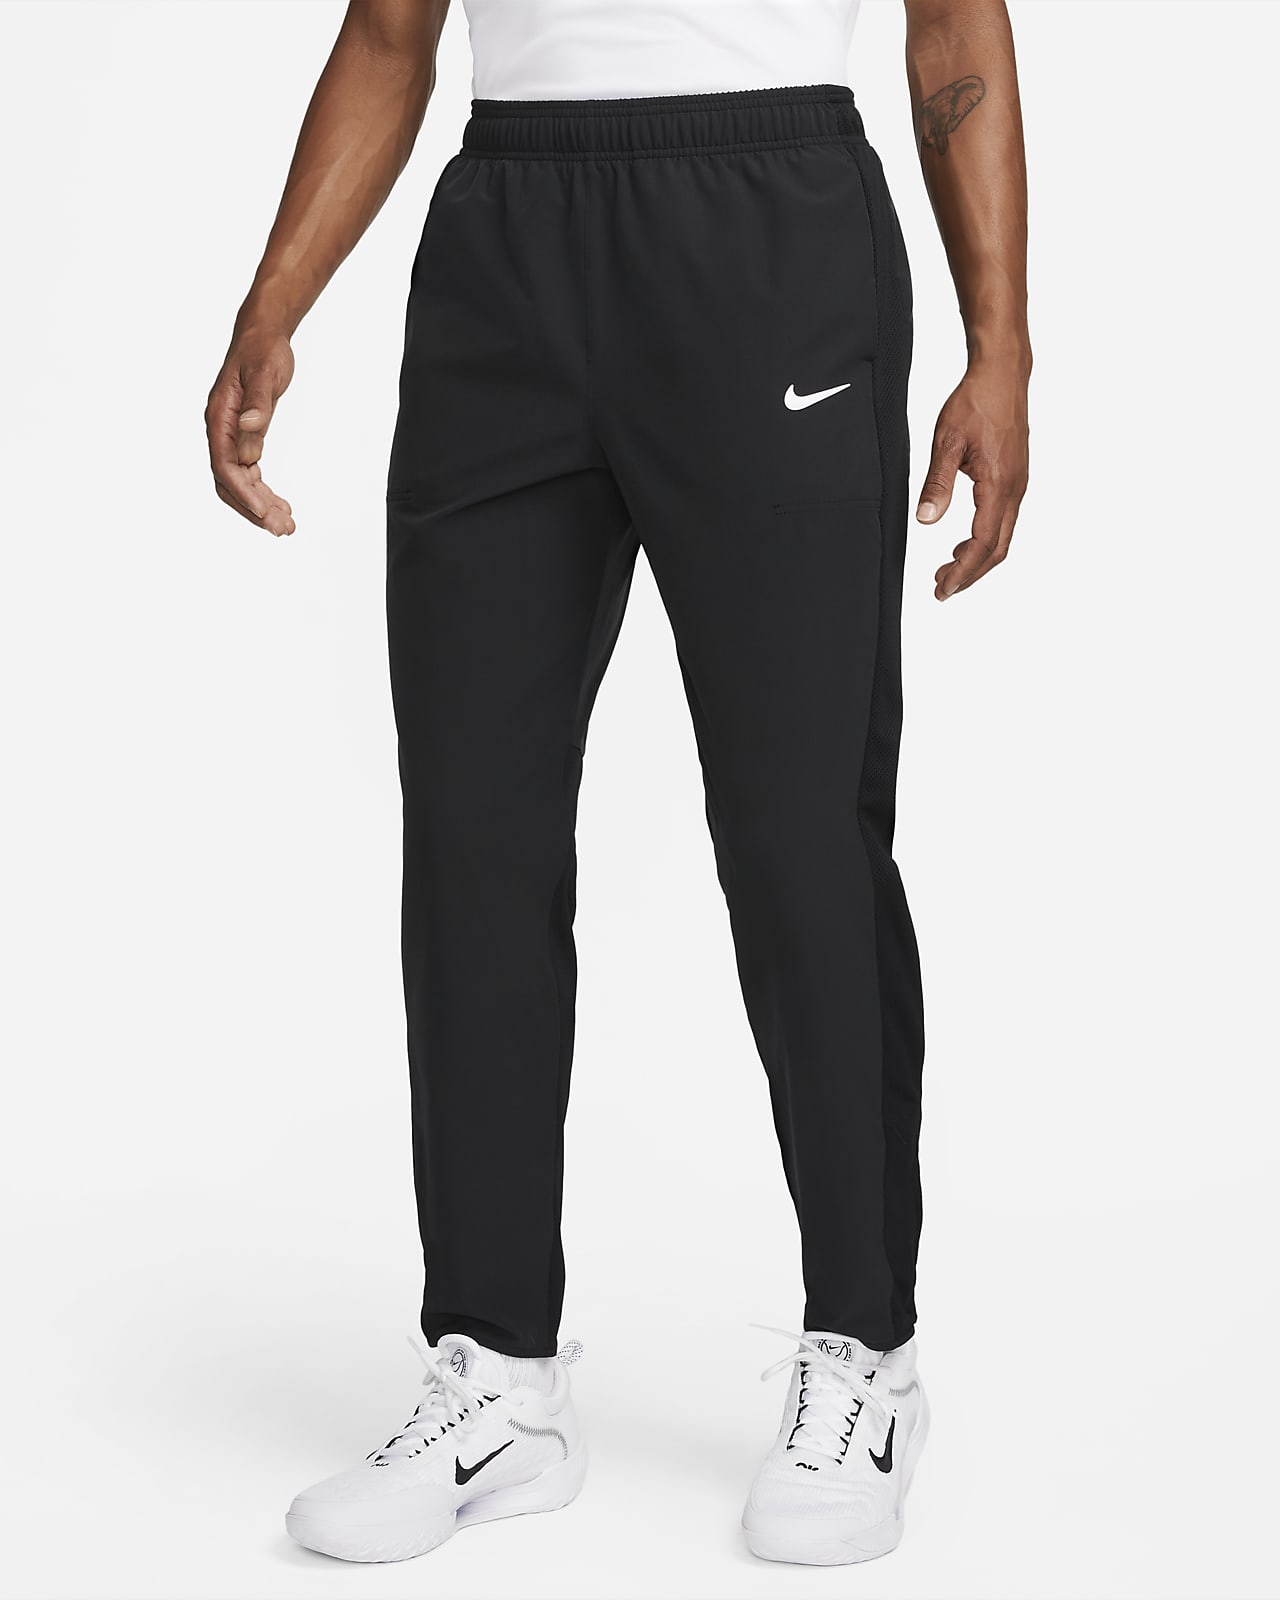 NikeCourt Advantage Men's Tennis Trousers. Nike CZ